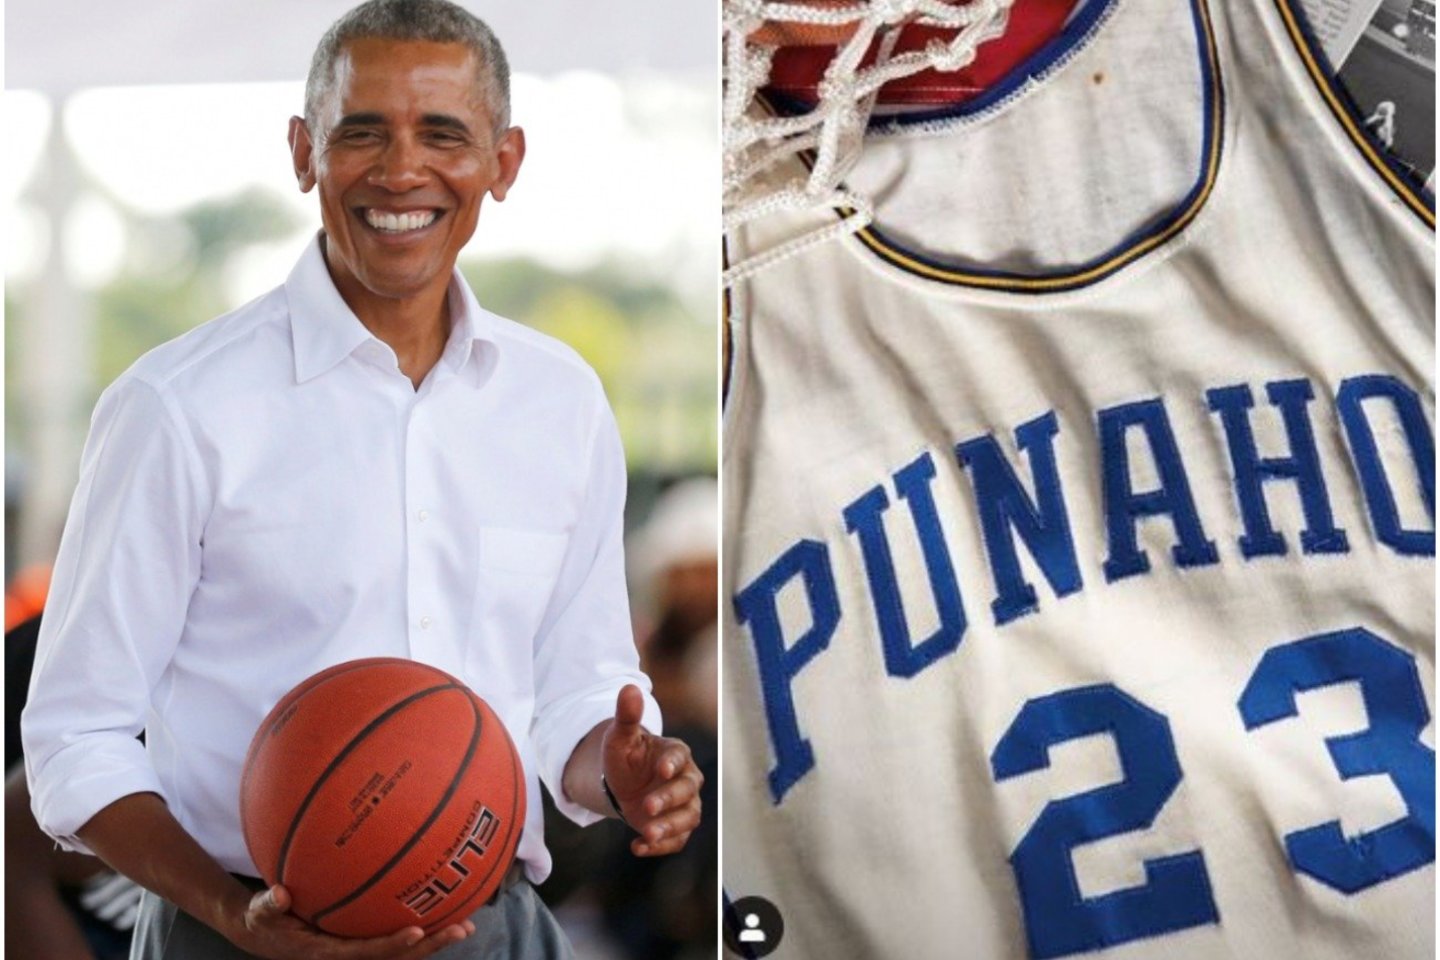  Baracko Obamos krepšinio marškinėliai parduoti už 120 tūkst. JAV dolerių<br> AFP/Scanpix.com nuotr.